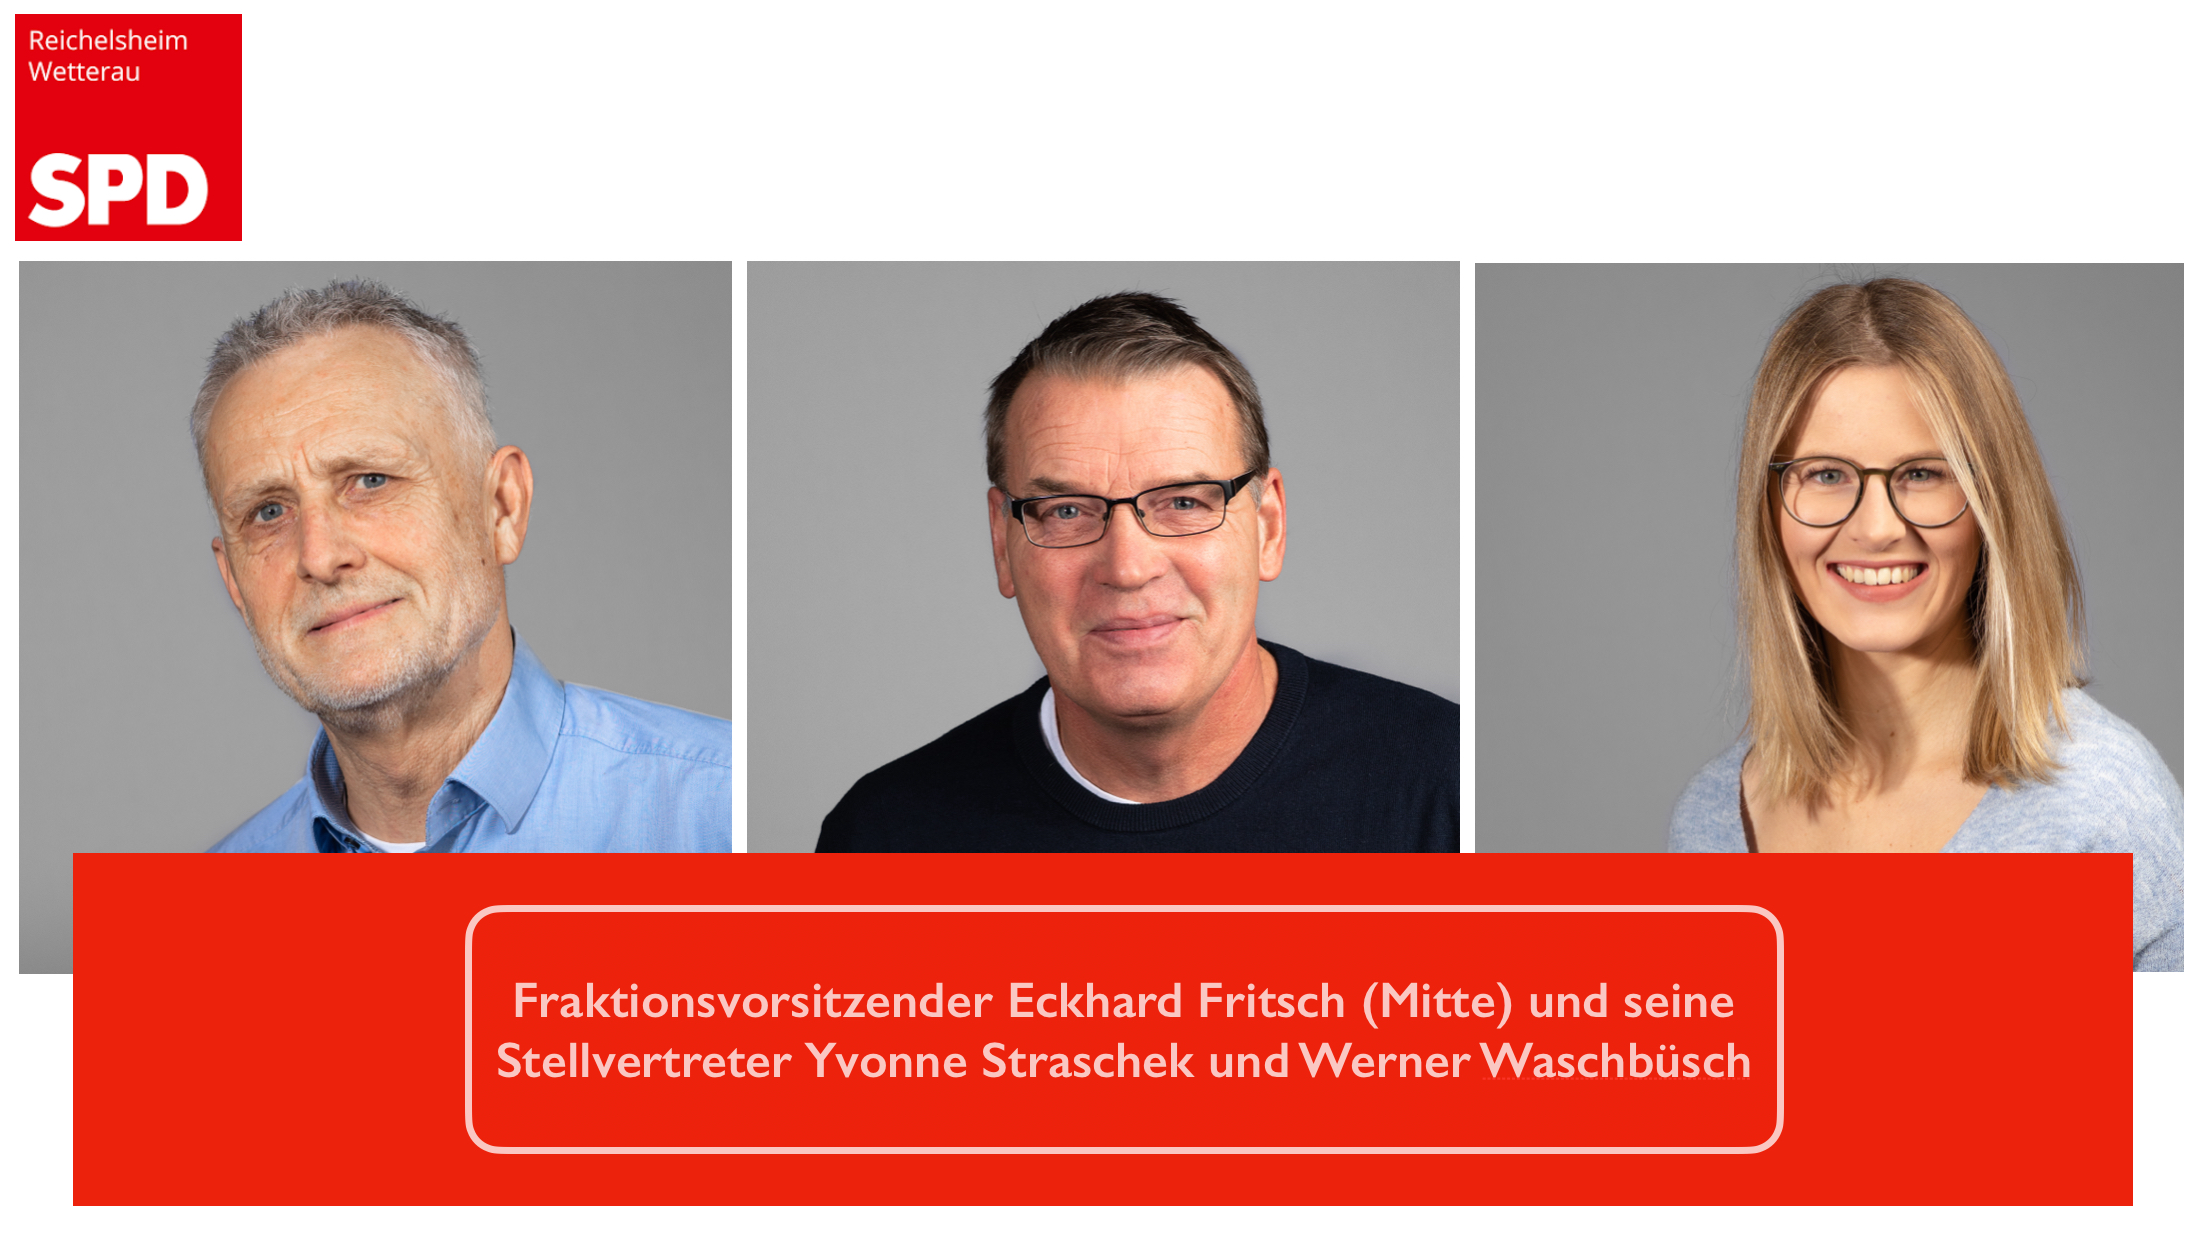 Werner Waschbüsch / Eckhard Fritsch / Yvonne Straschek